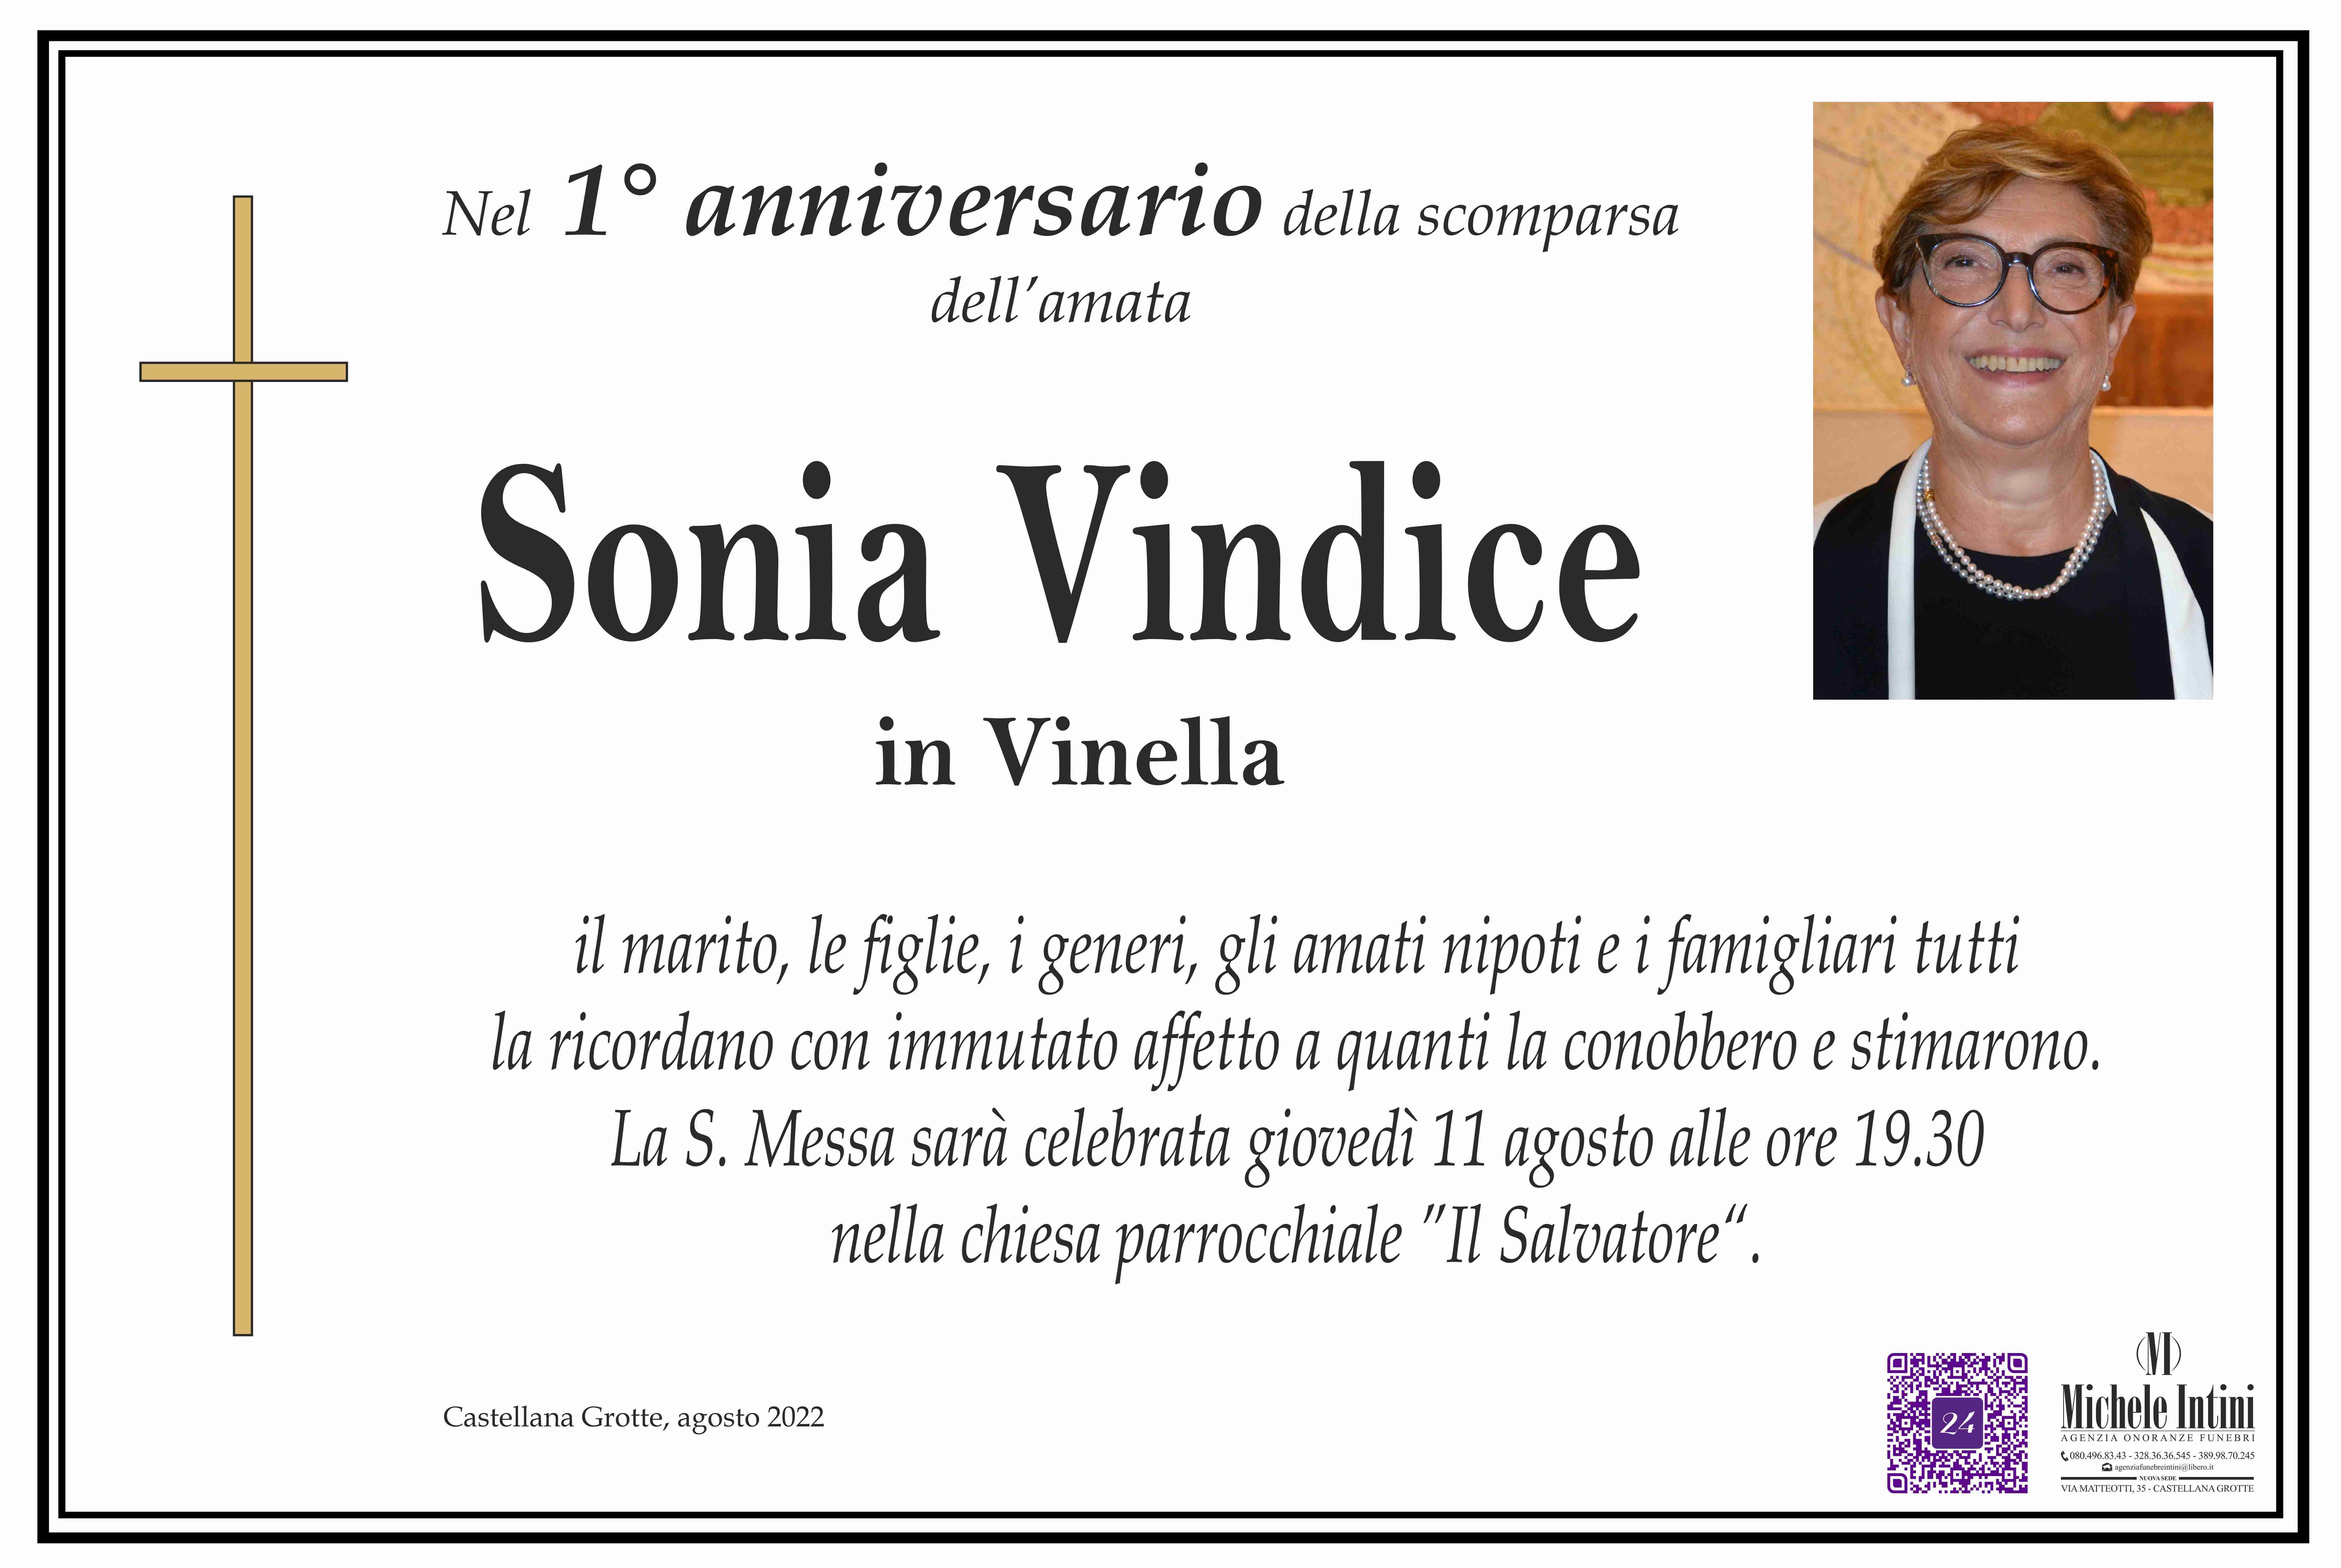 Sonia Vindice